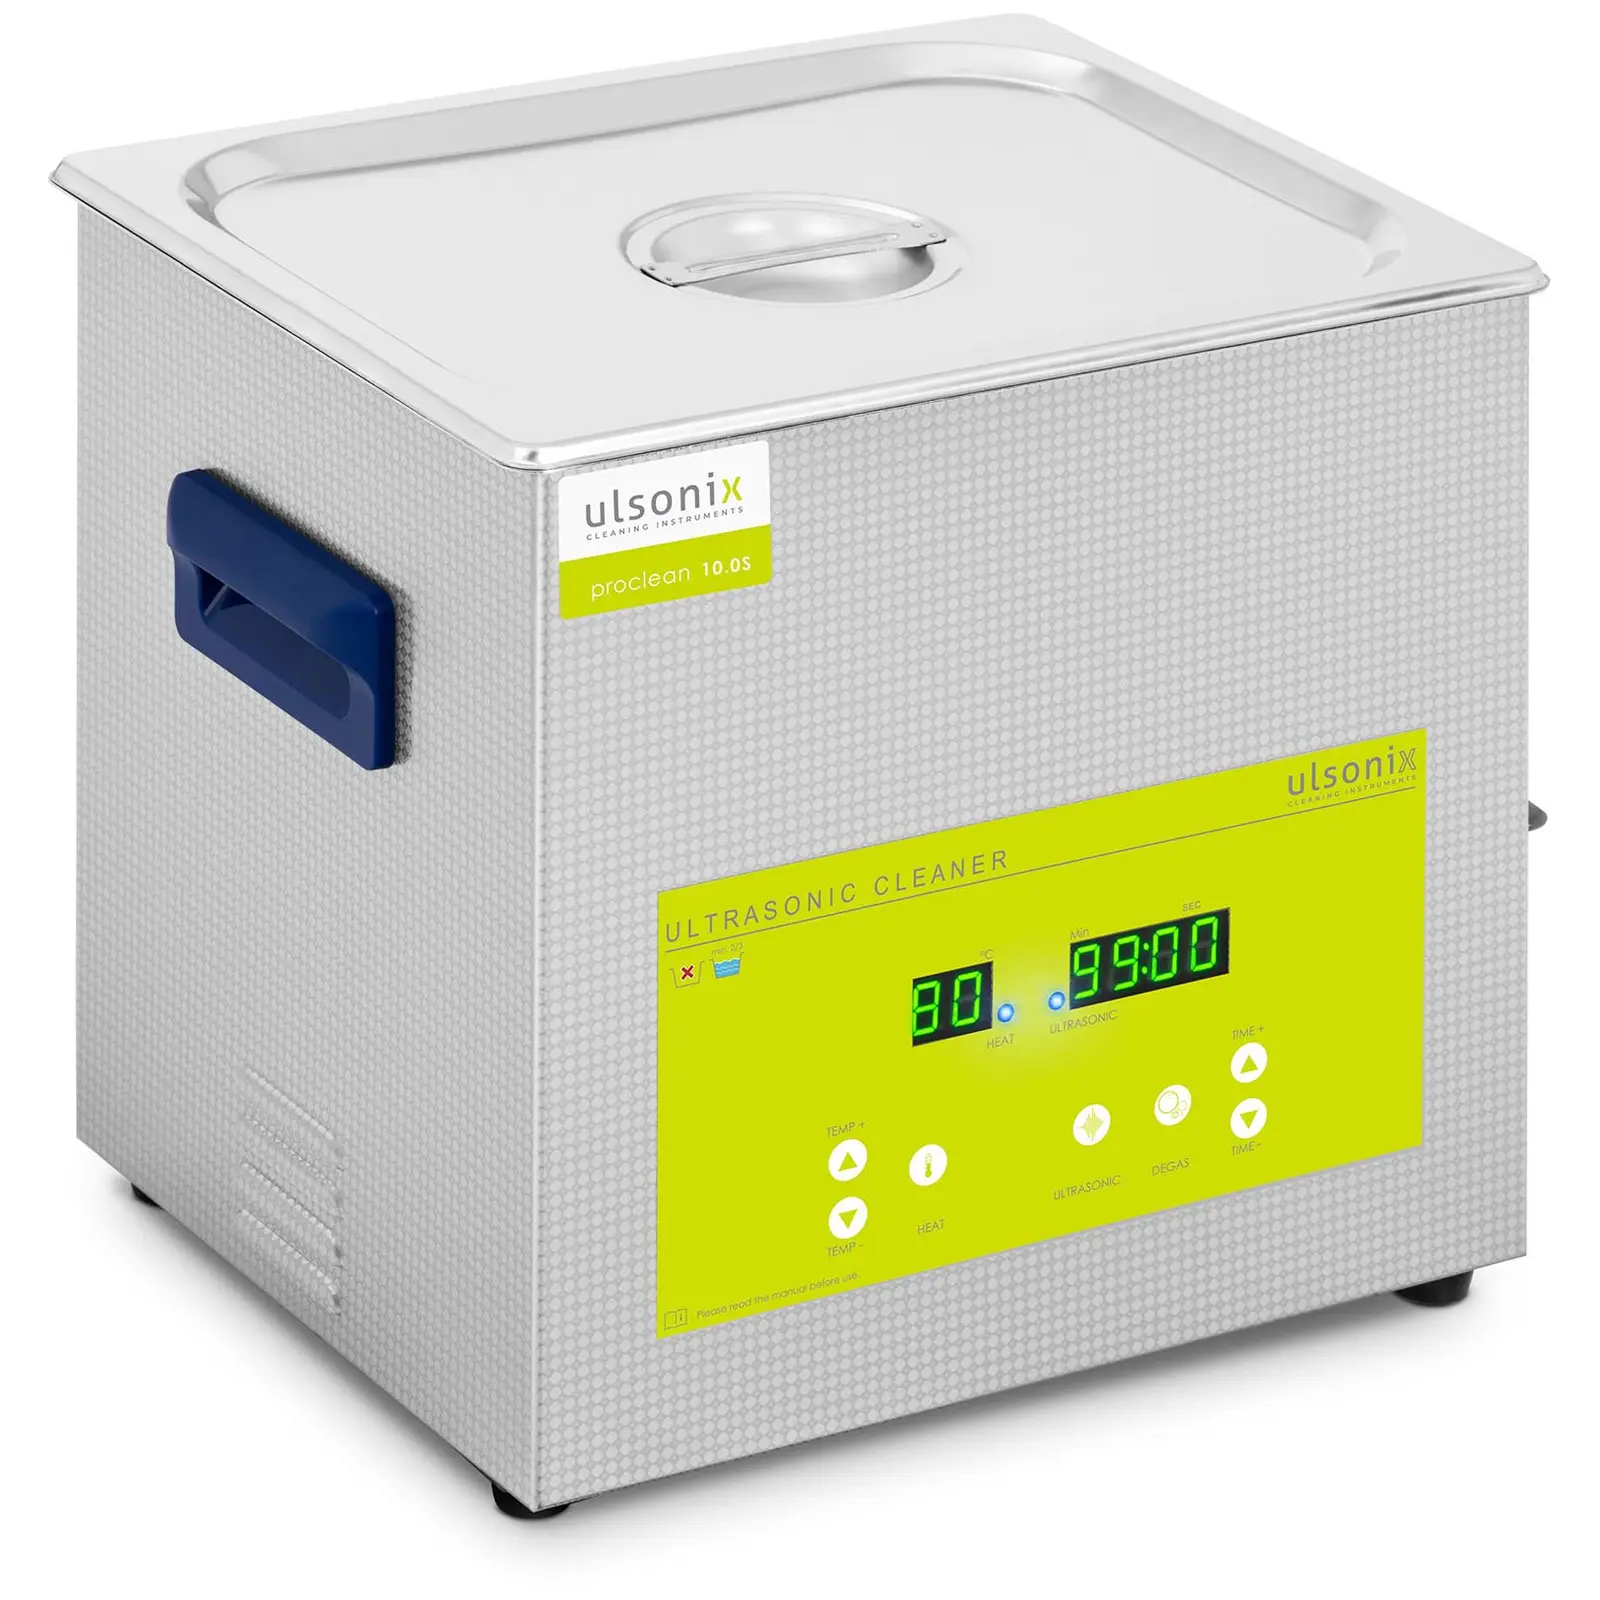 Limpiador ultrasonidos - desgasificación - 10 L